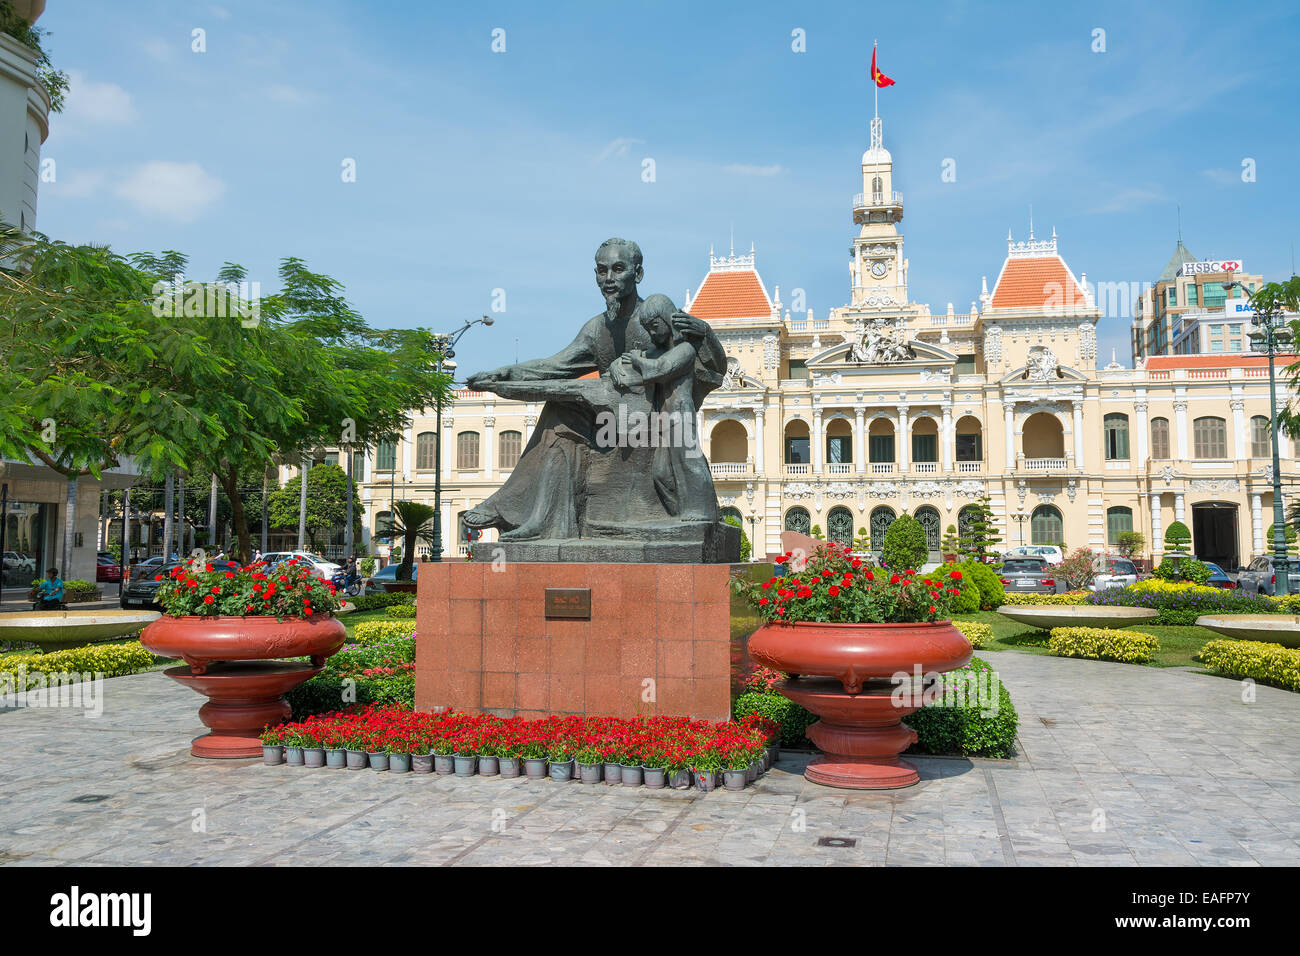 L'Hôtel de Ville d'Ho Chi Minh City Saigon Vietnam Asie du sud-est. Banque D'Images